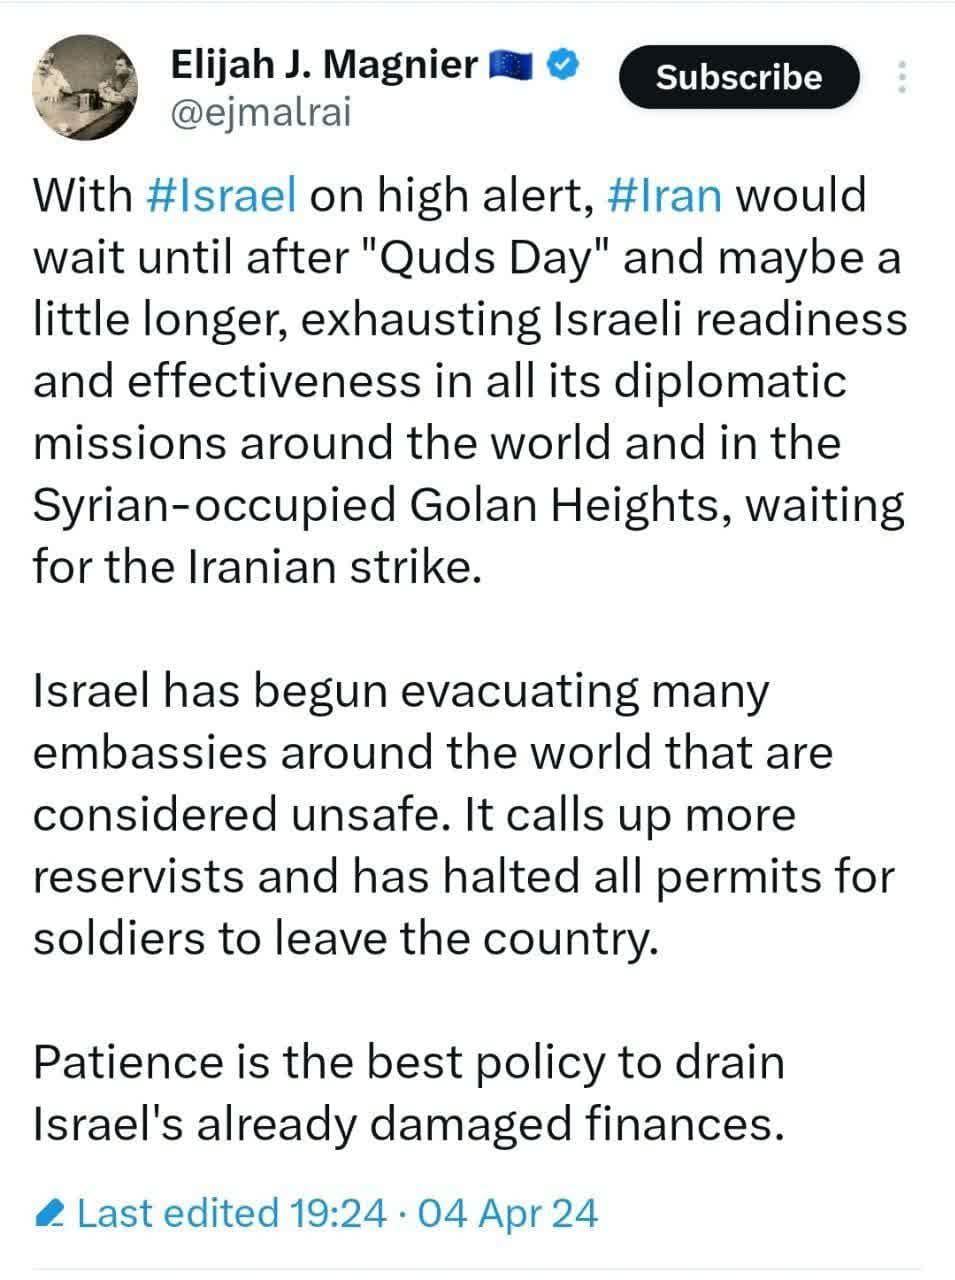 صبر بهترین سیاست ایران است